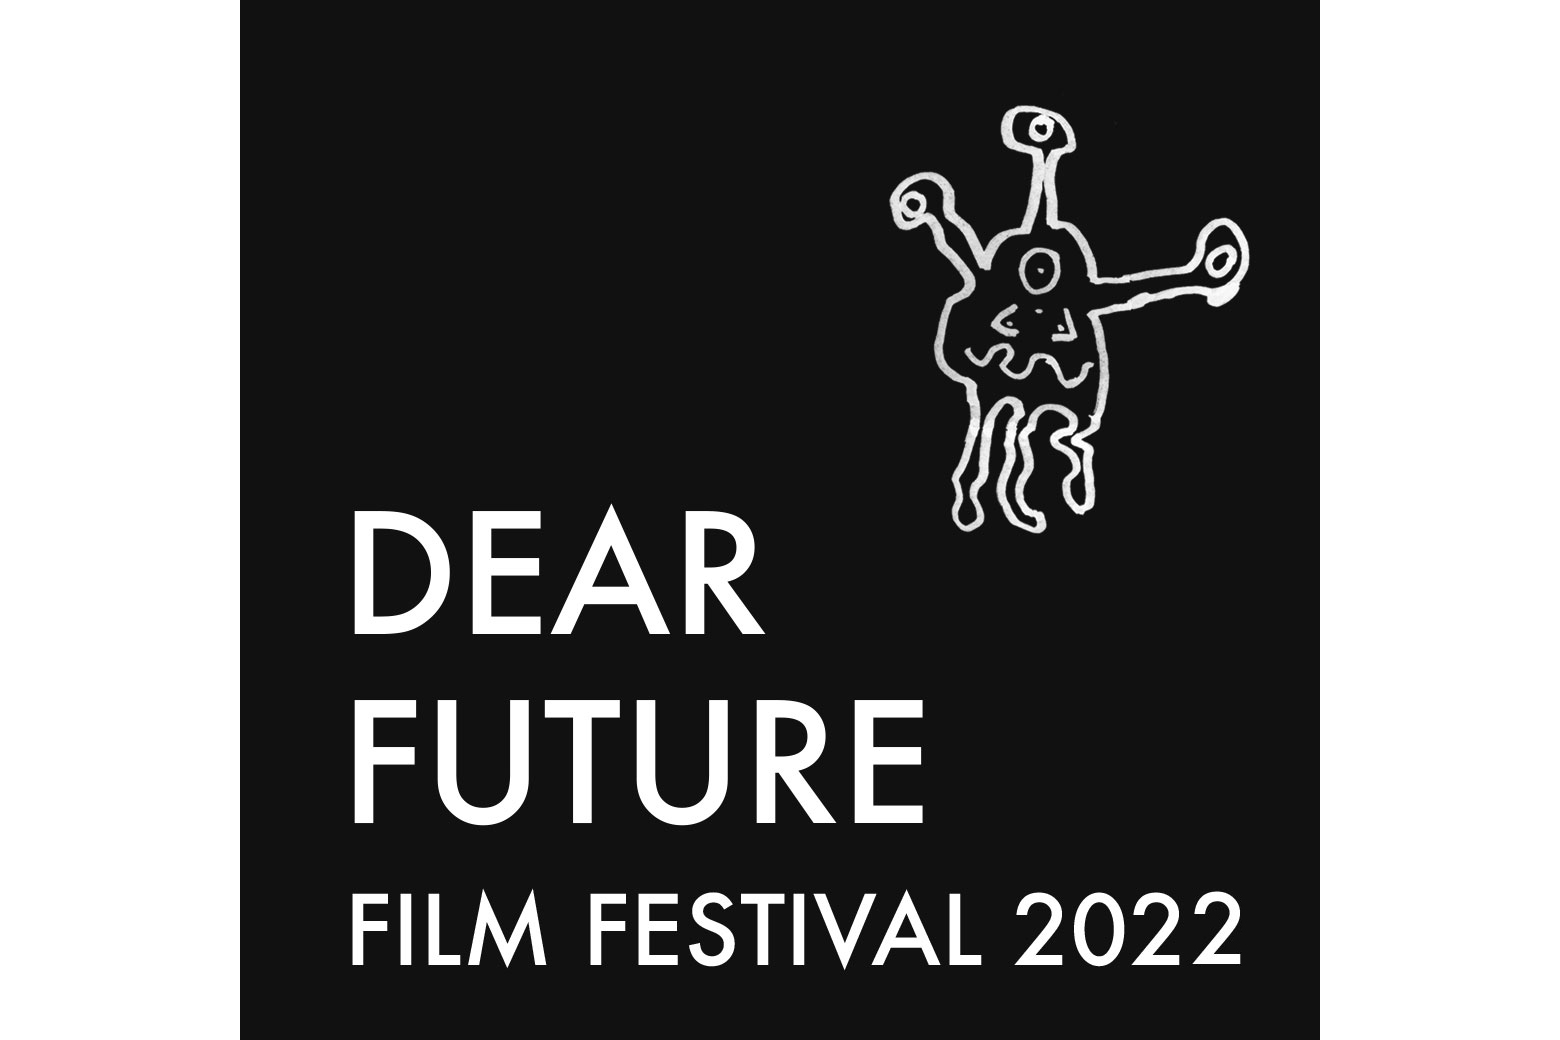 Dear Future Film Festival logo